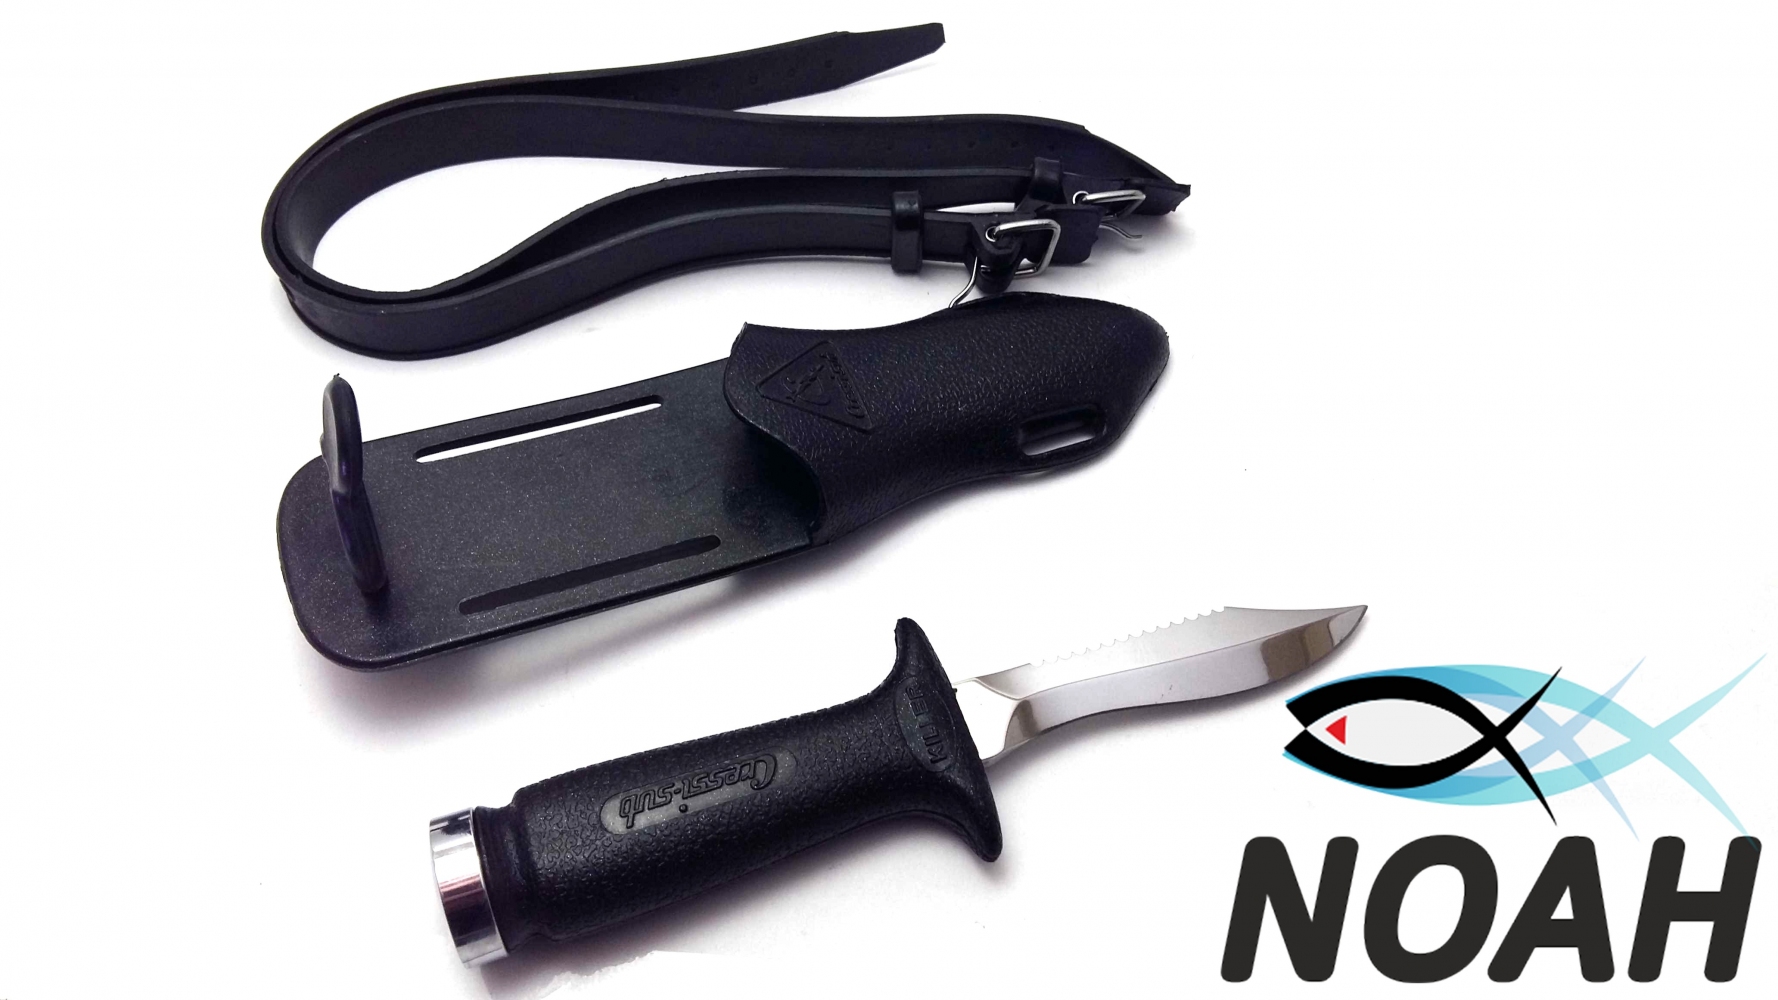 Нож Cressi Killer для подводной охоты -   Магазин Noah (Ной) -  Купить ножи CRESSI для подводной охоты, цены. / Магазин Ной (NOAH)